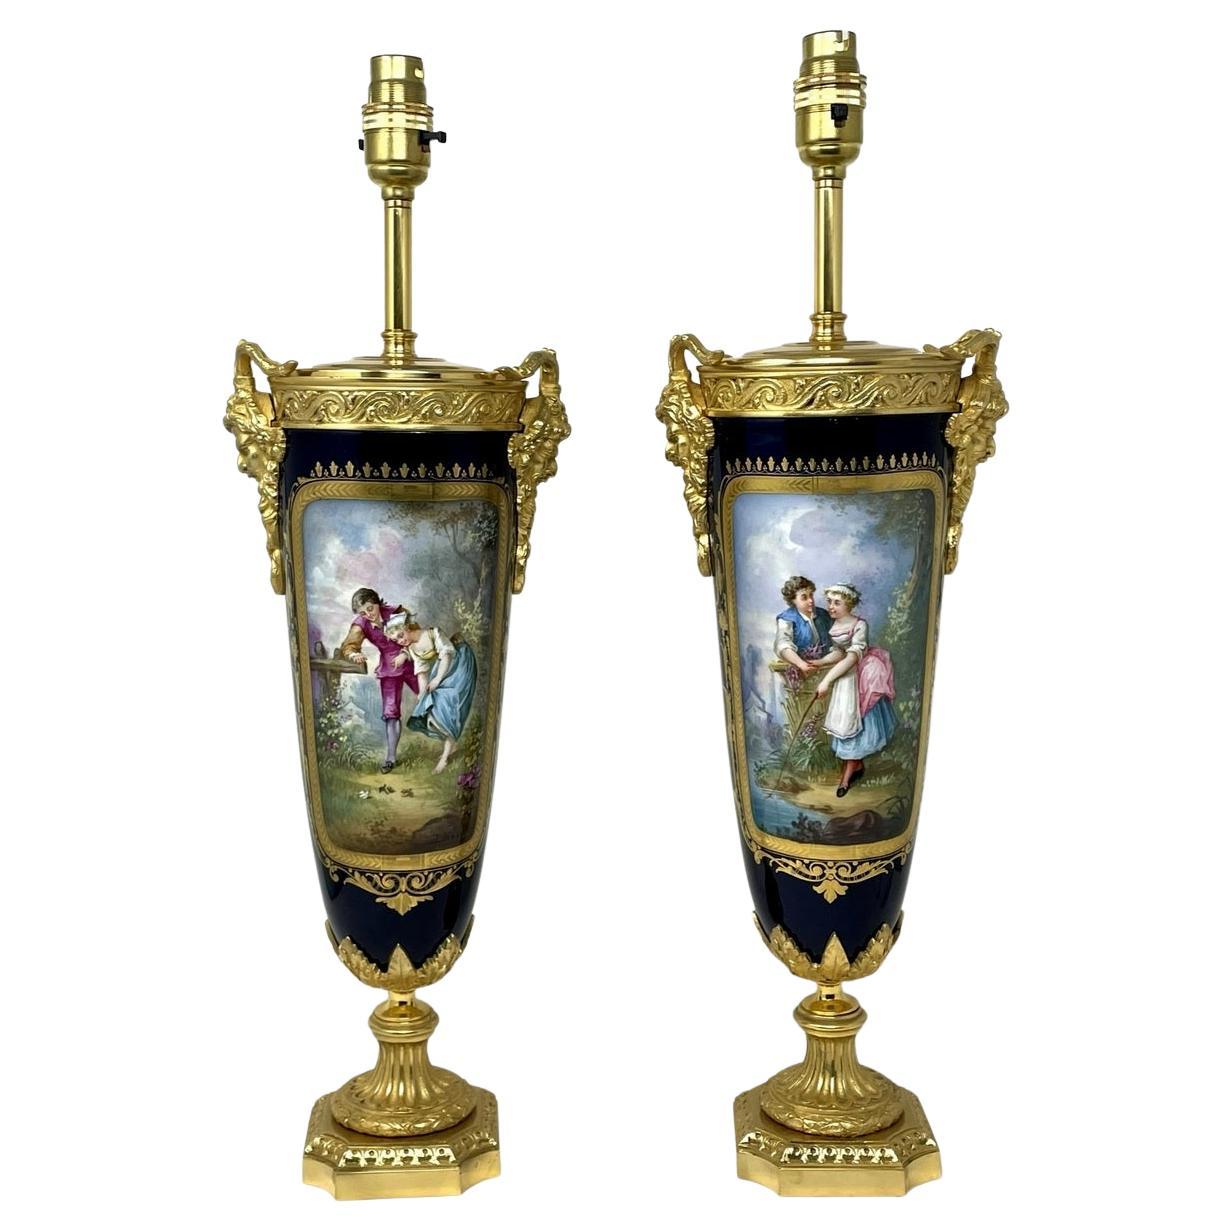 Pair Antique French Sèvres Porcelain Ormolu Gilt Bronze Dore Table Urns Lamps